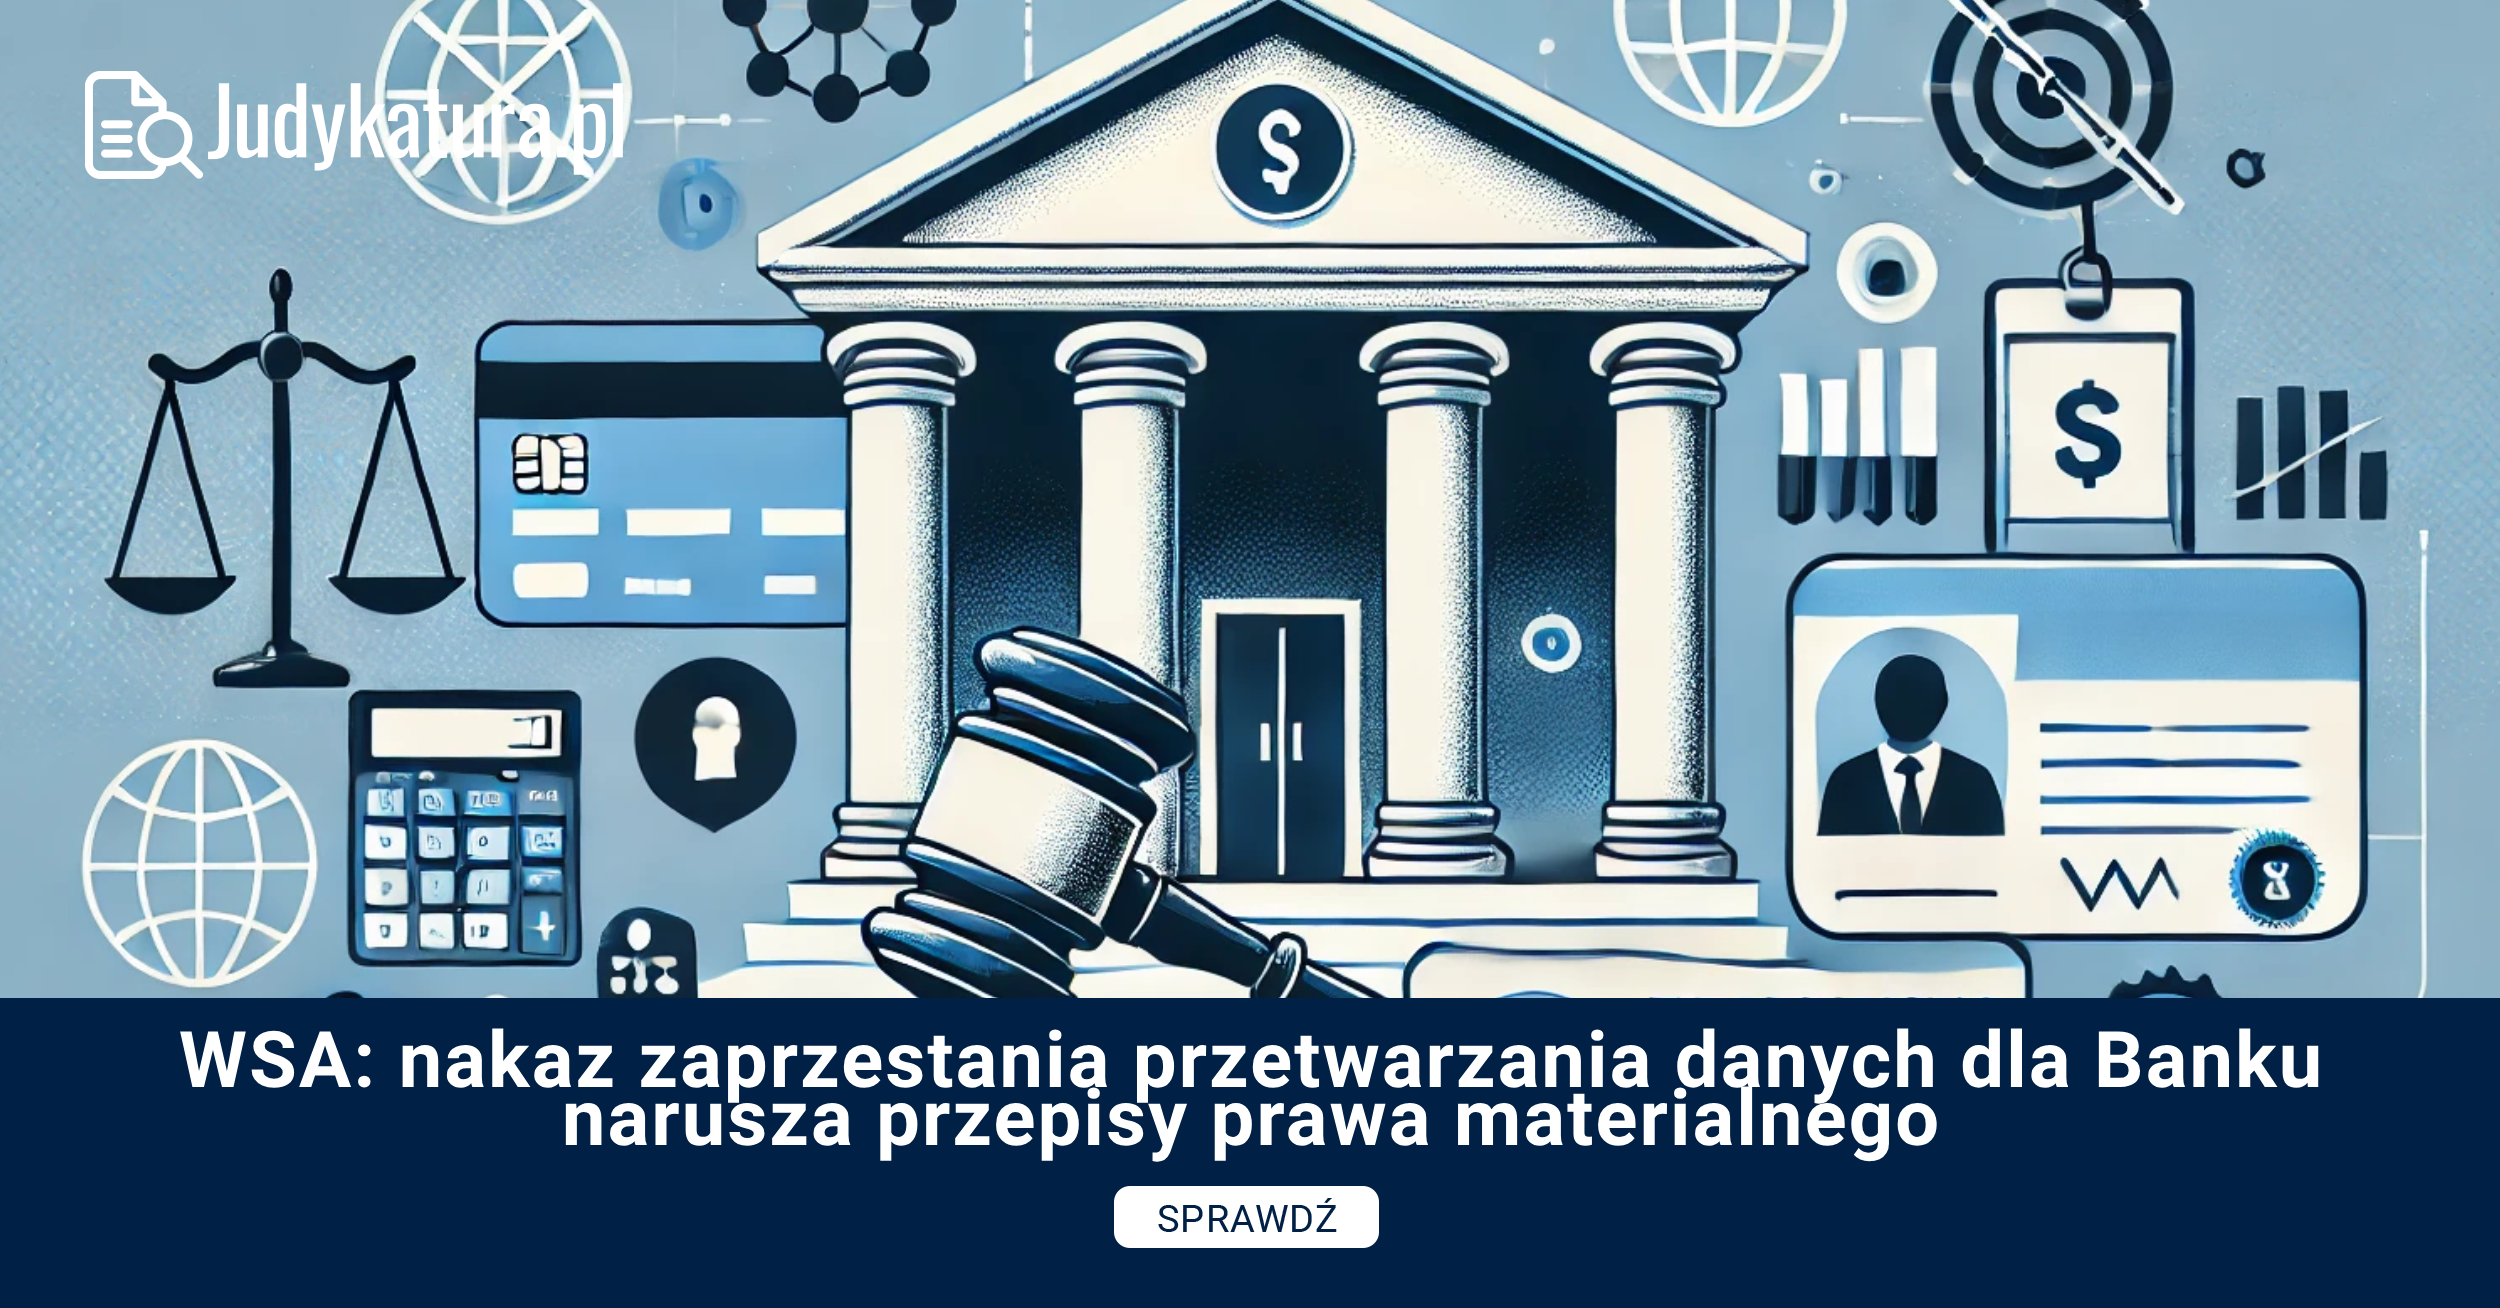 WSA: nakaz zaprzestania przetwarzania danych dla Banku narusza przepisy prawa materialnego